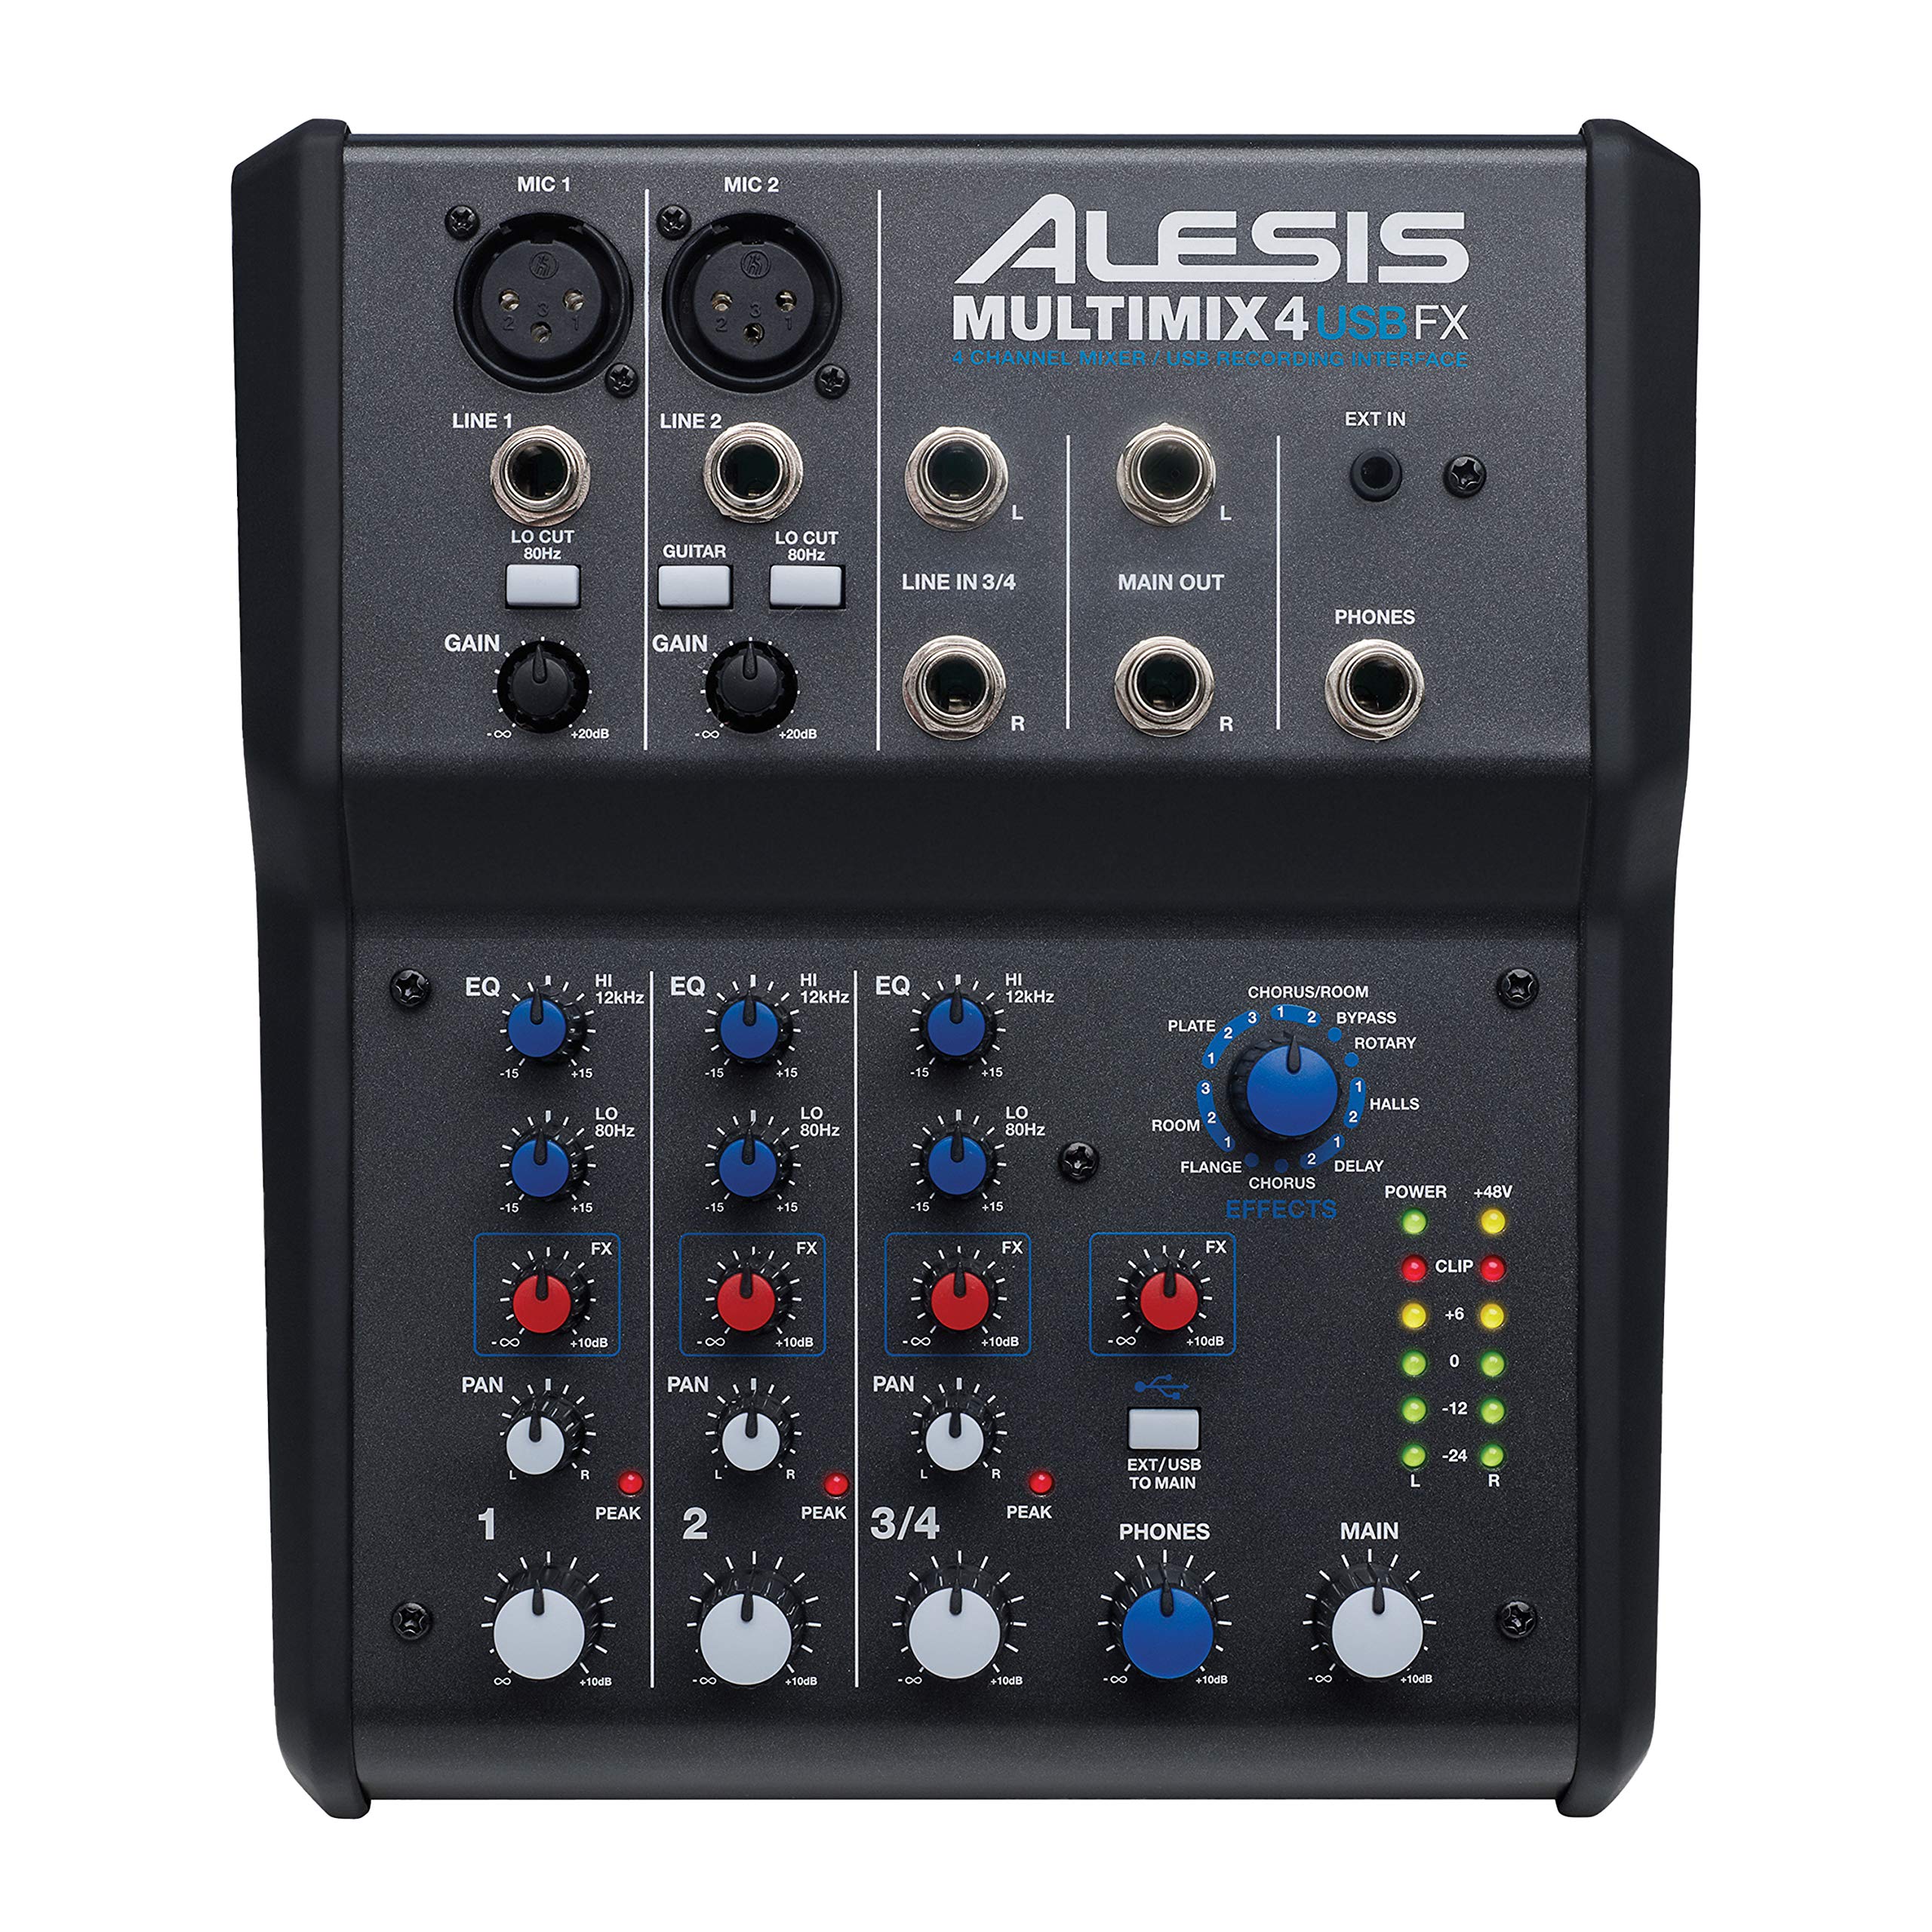 Alesis マルチミックス USB FX |エフェクトとUSBオーディオインターフェイスを備えたチャンネルミキサー